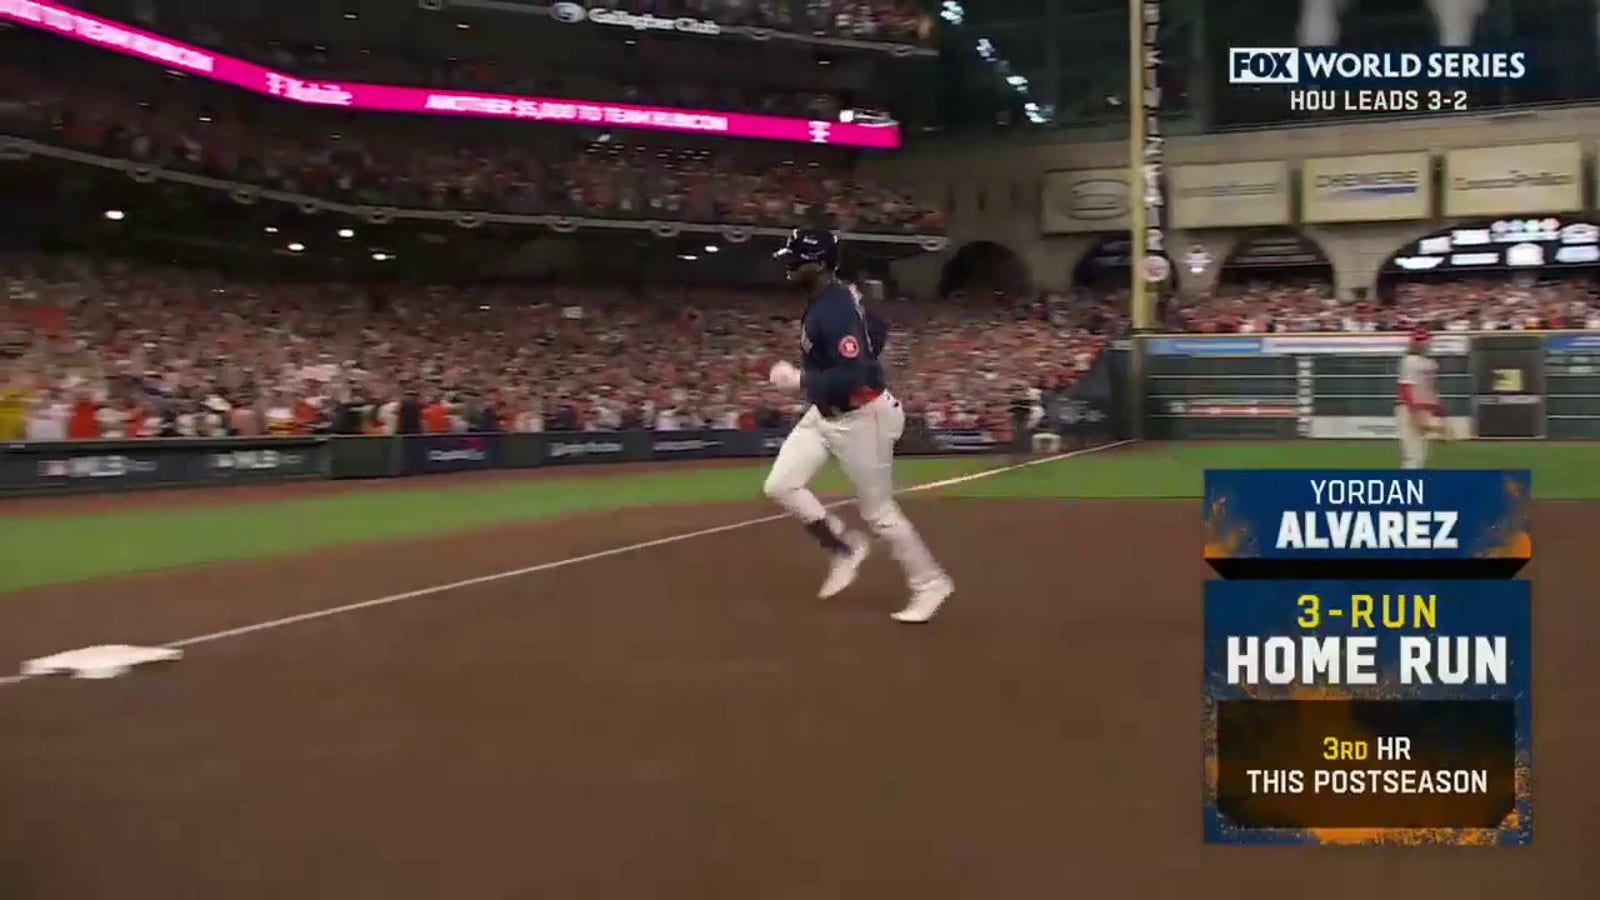 Jordan Alvarez hits a 3-run homer to give Astros a 3-1 lead